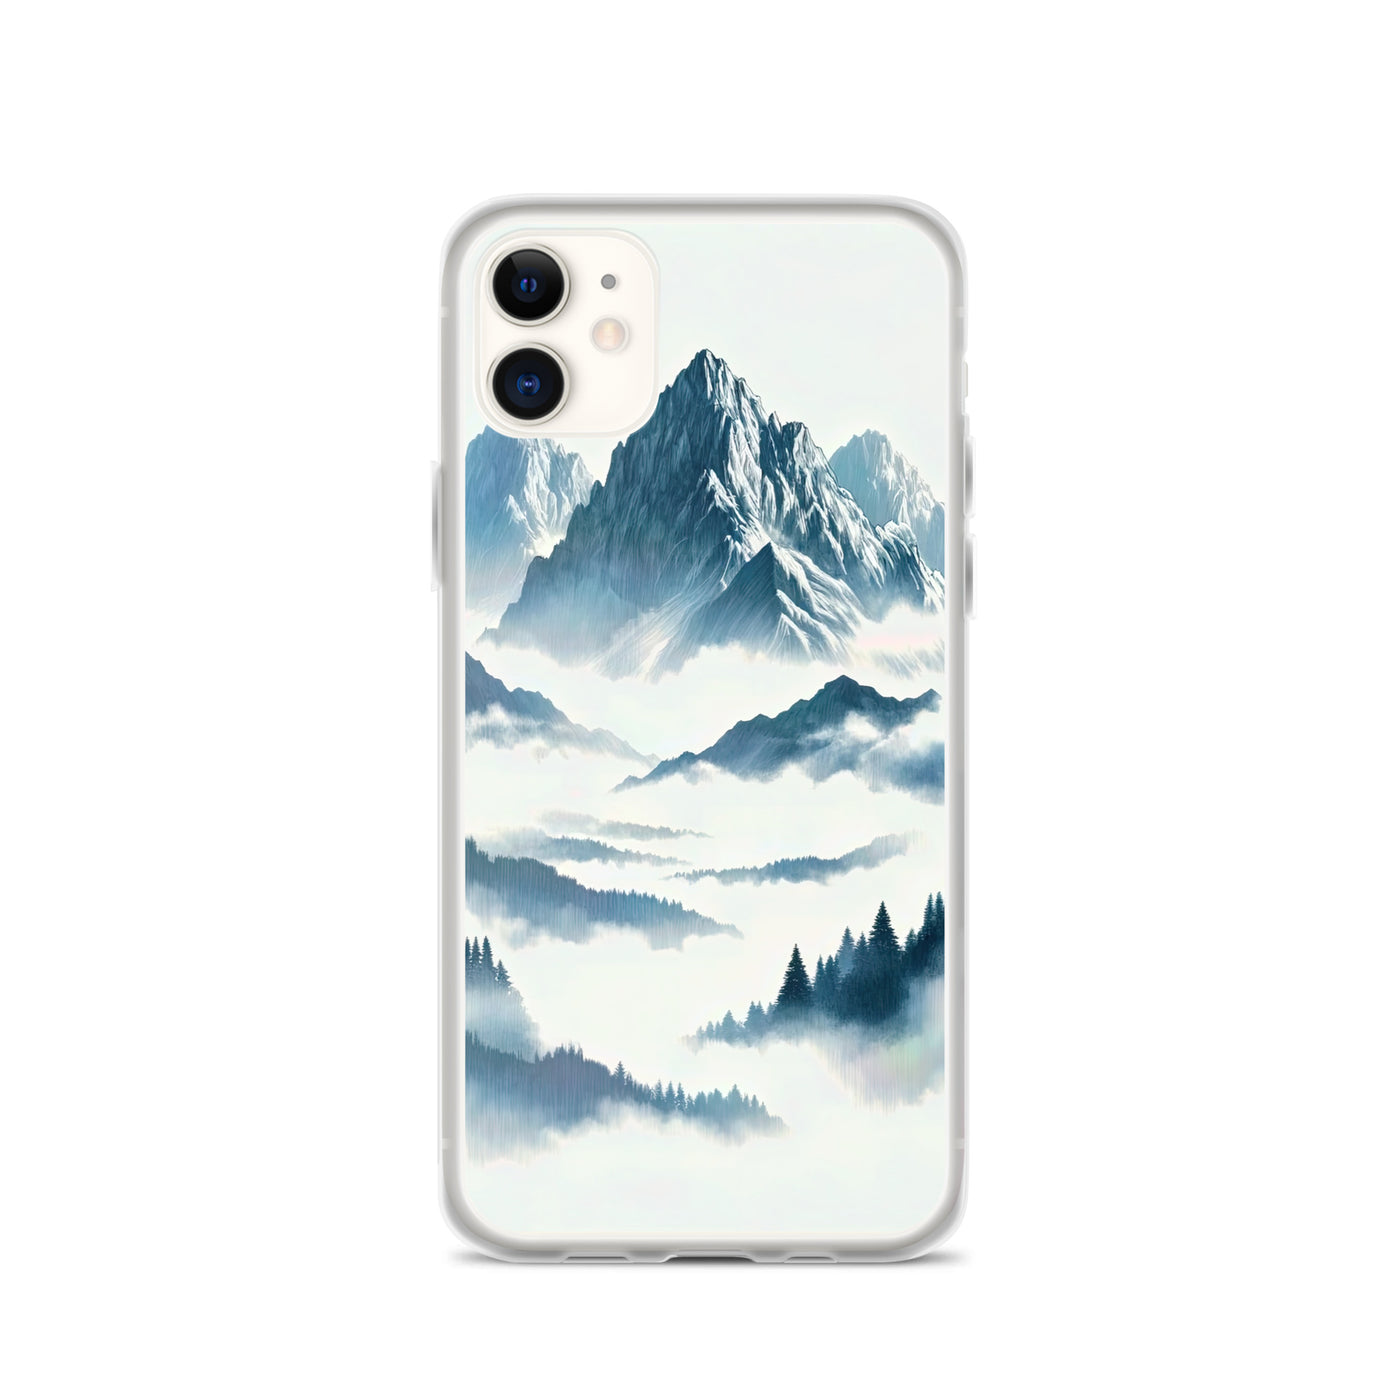 Nebeliger Alpenmorgen-Essenz, verdeckte Täler und Wälder - iPhone Schutzhülle (durchsichtig) berge xxx yyy zzz iPhone 11